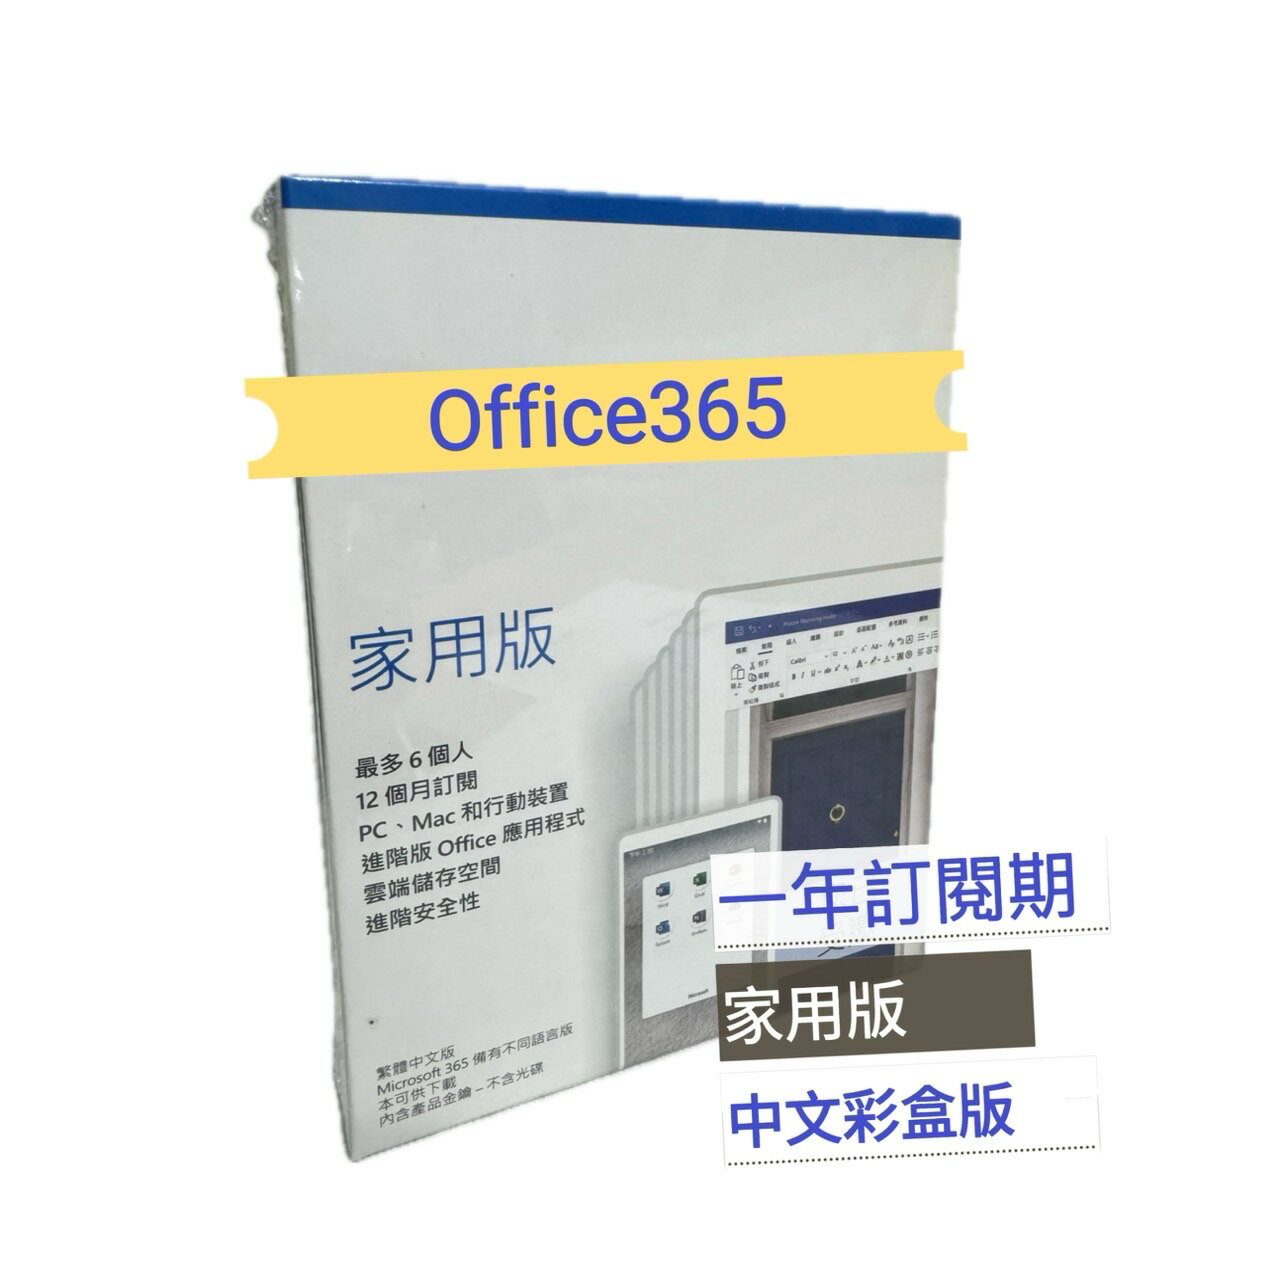 【輸入折扣碼MOM100折$100】Office 365 家用版-中文版 盒裝版 (一年訂閱期) 最多可6人使用